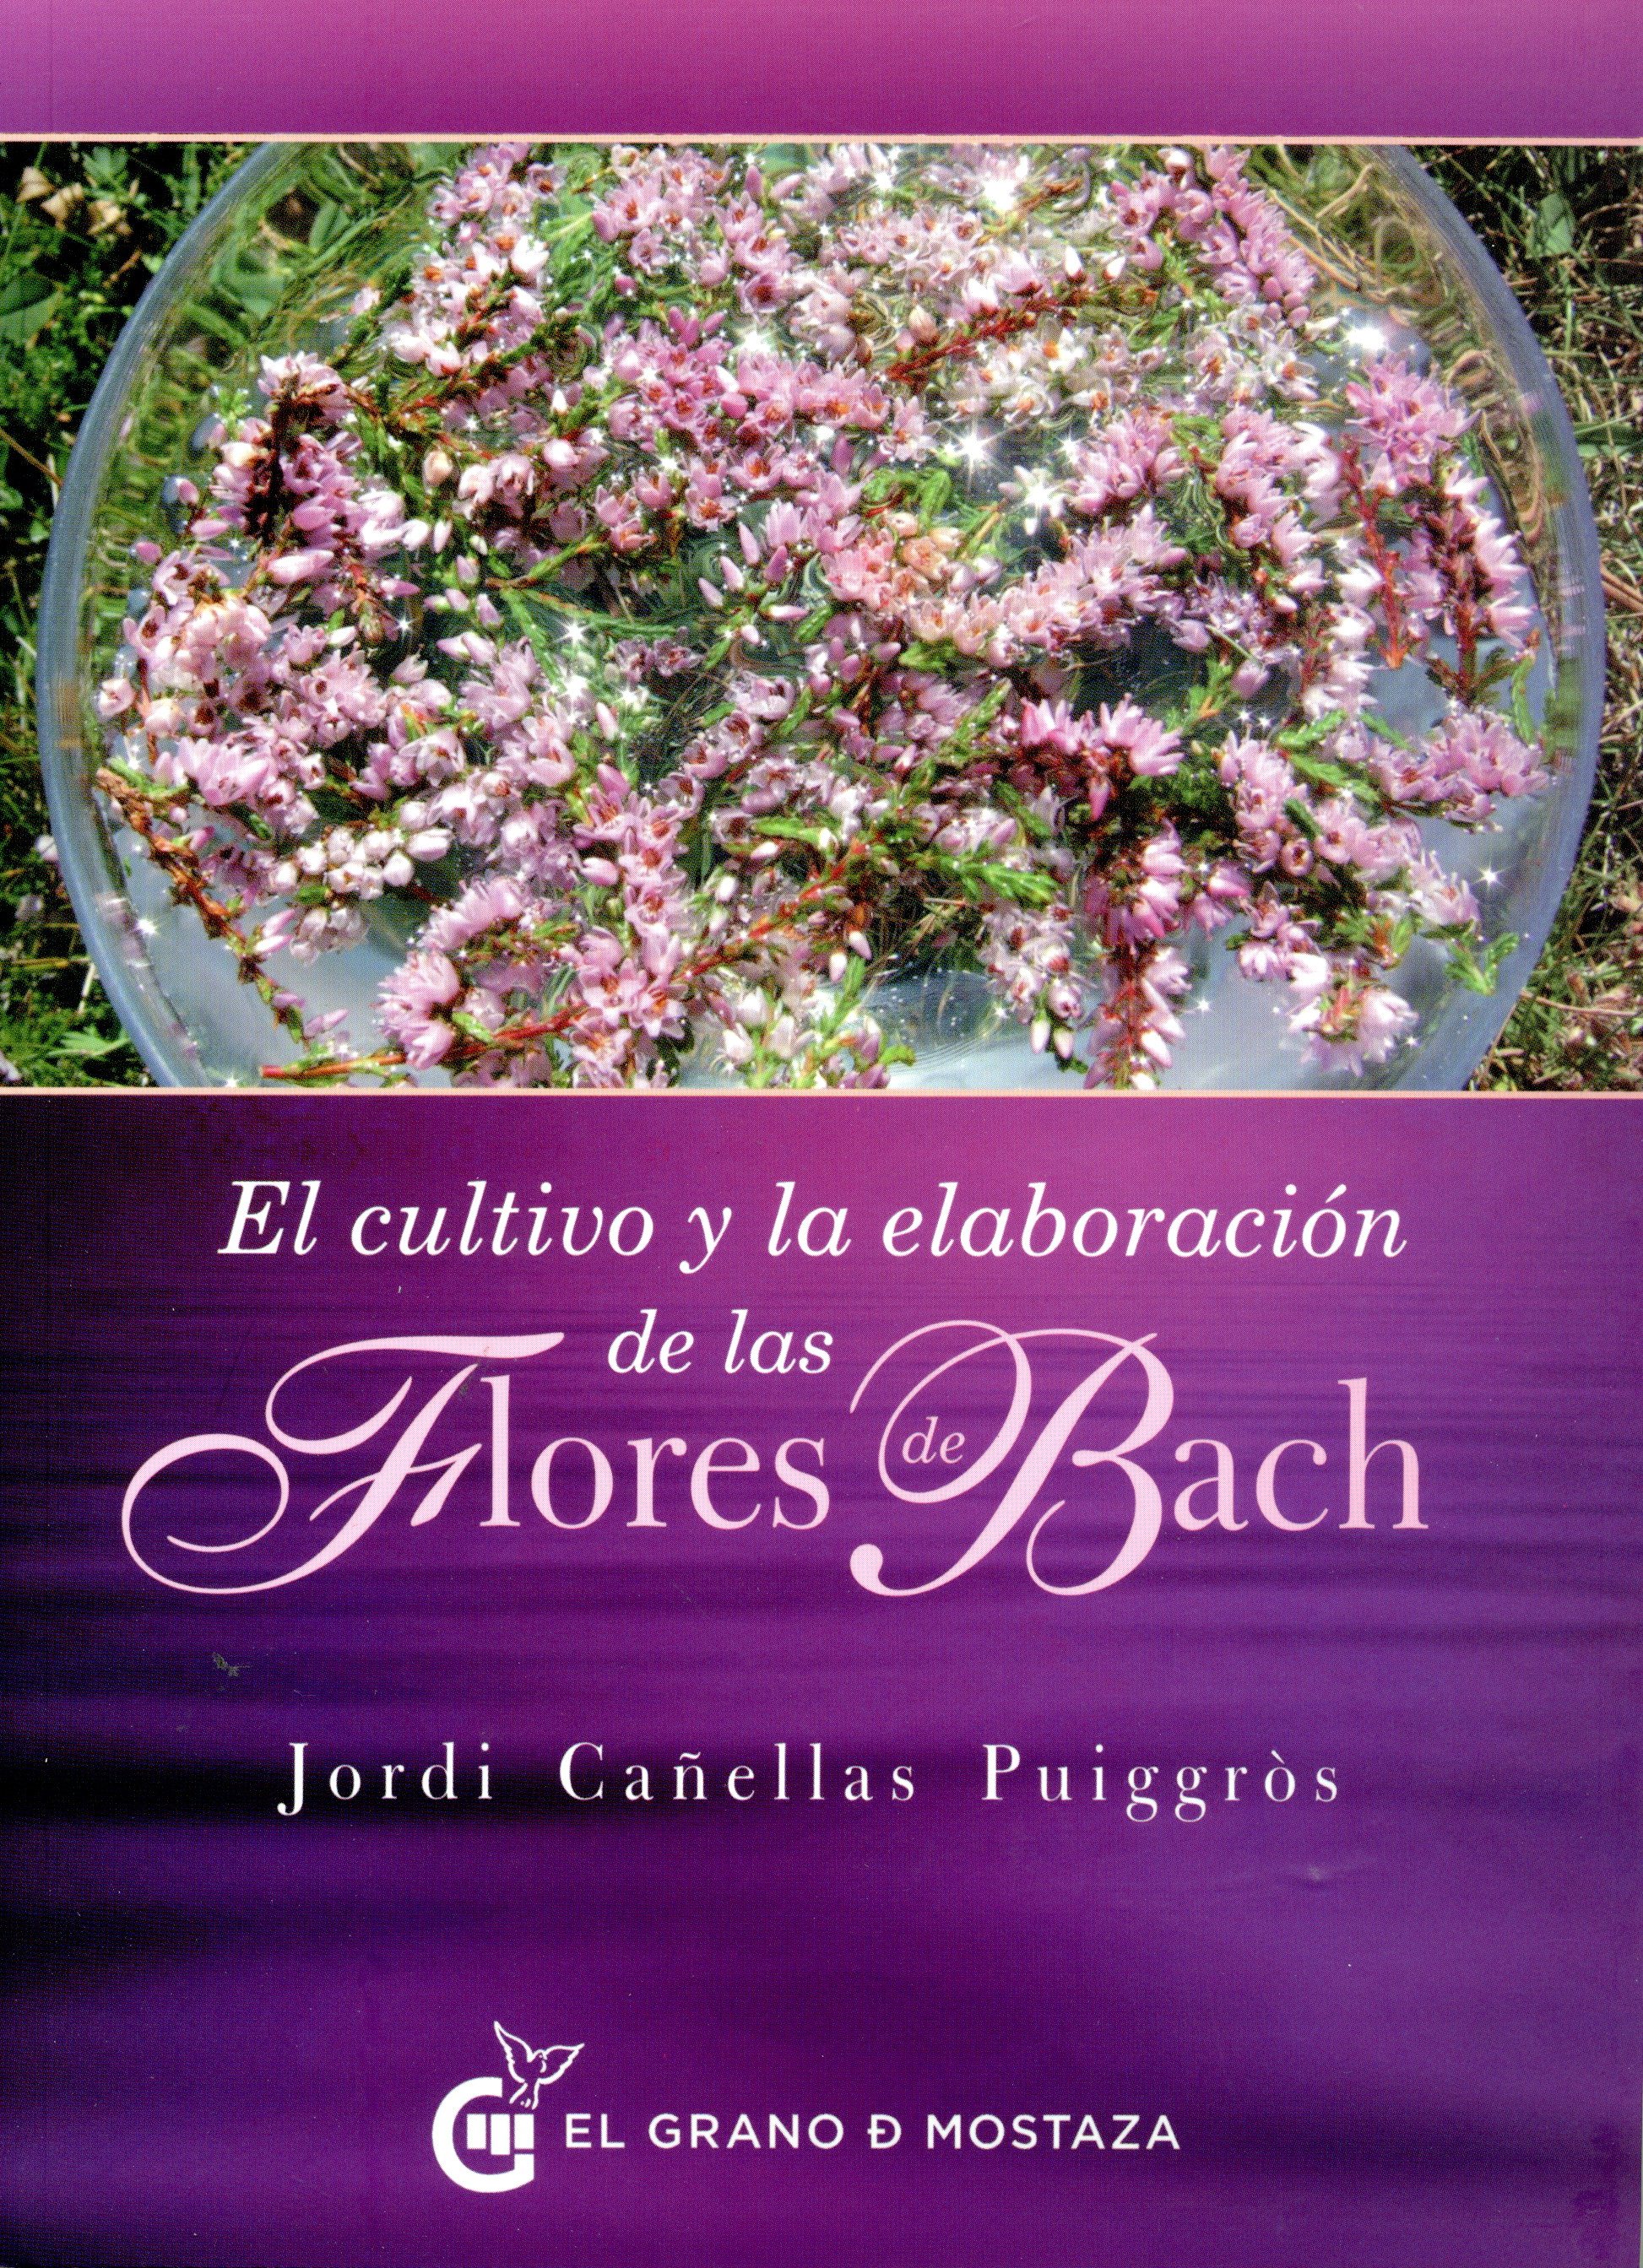 
            El cultivo y la elaboración de las Flores de Bach